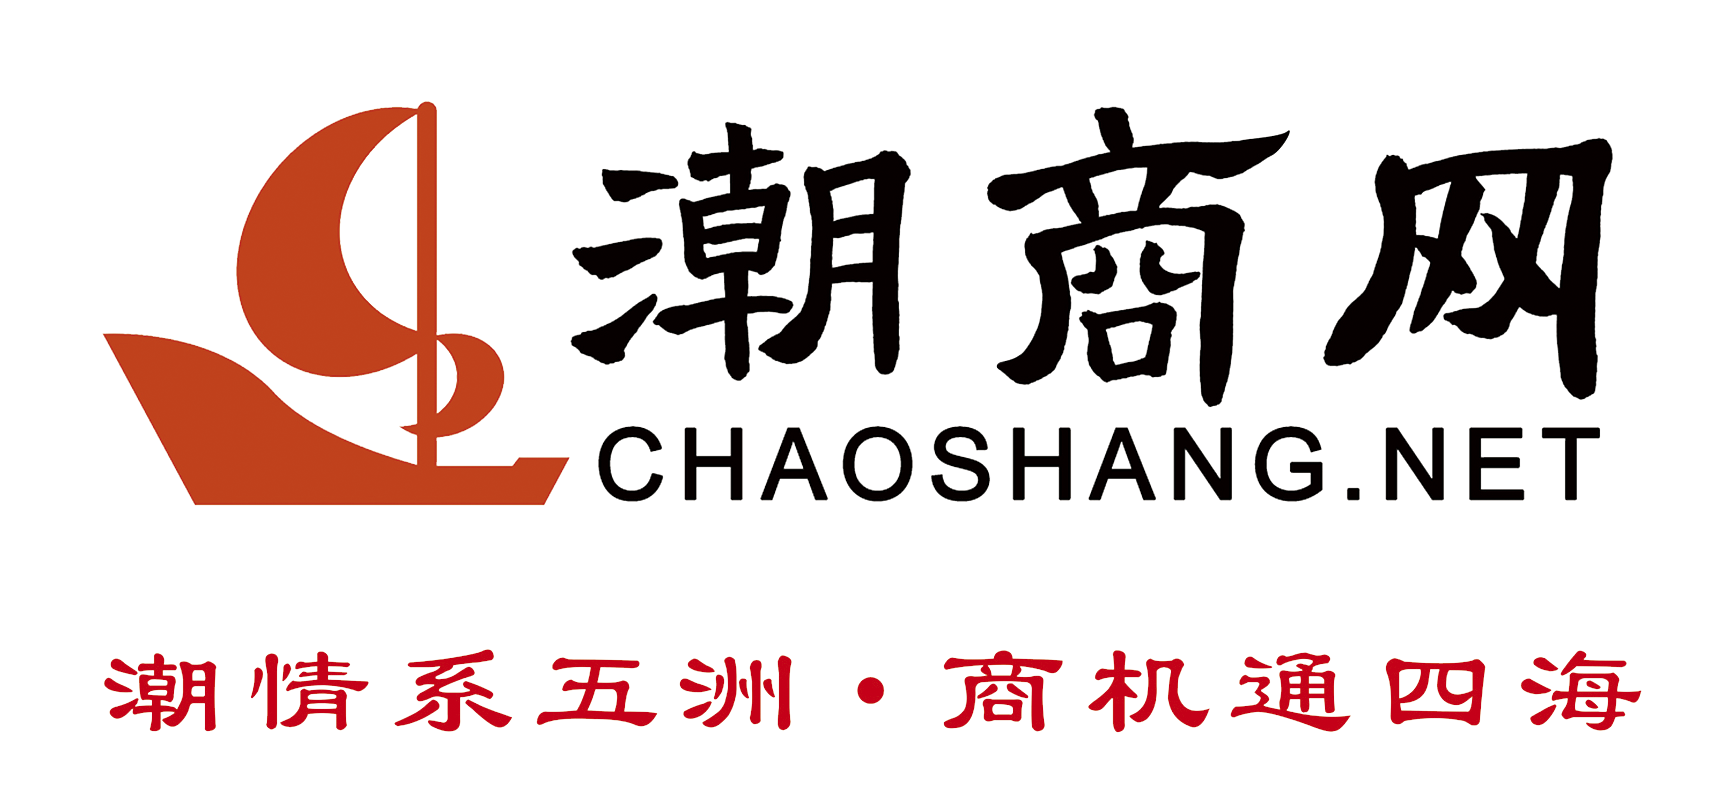 潮商网logo.png